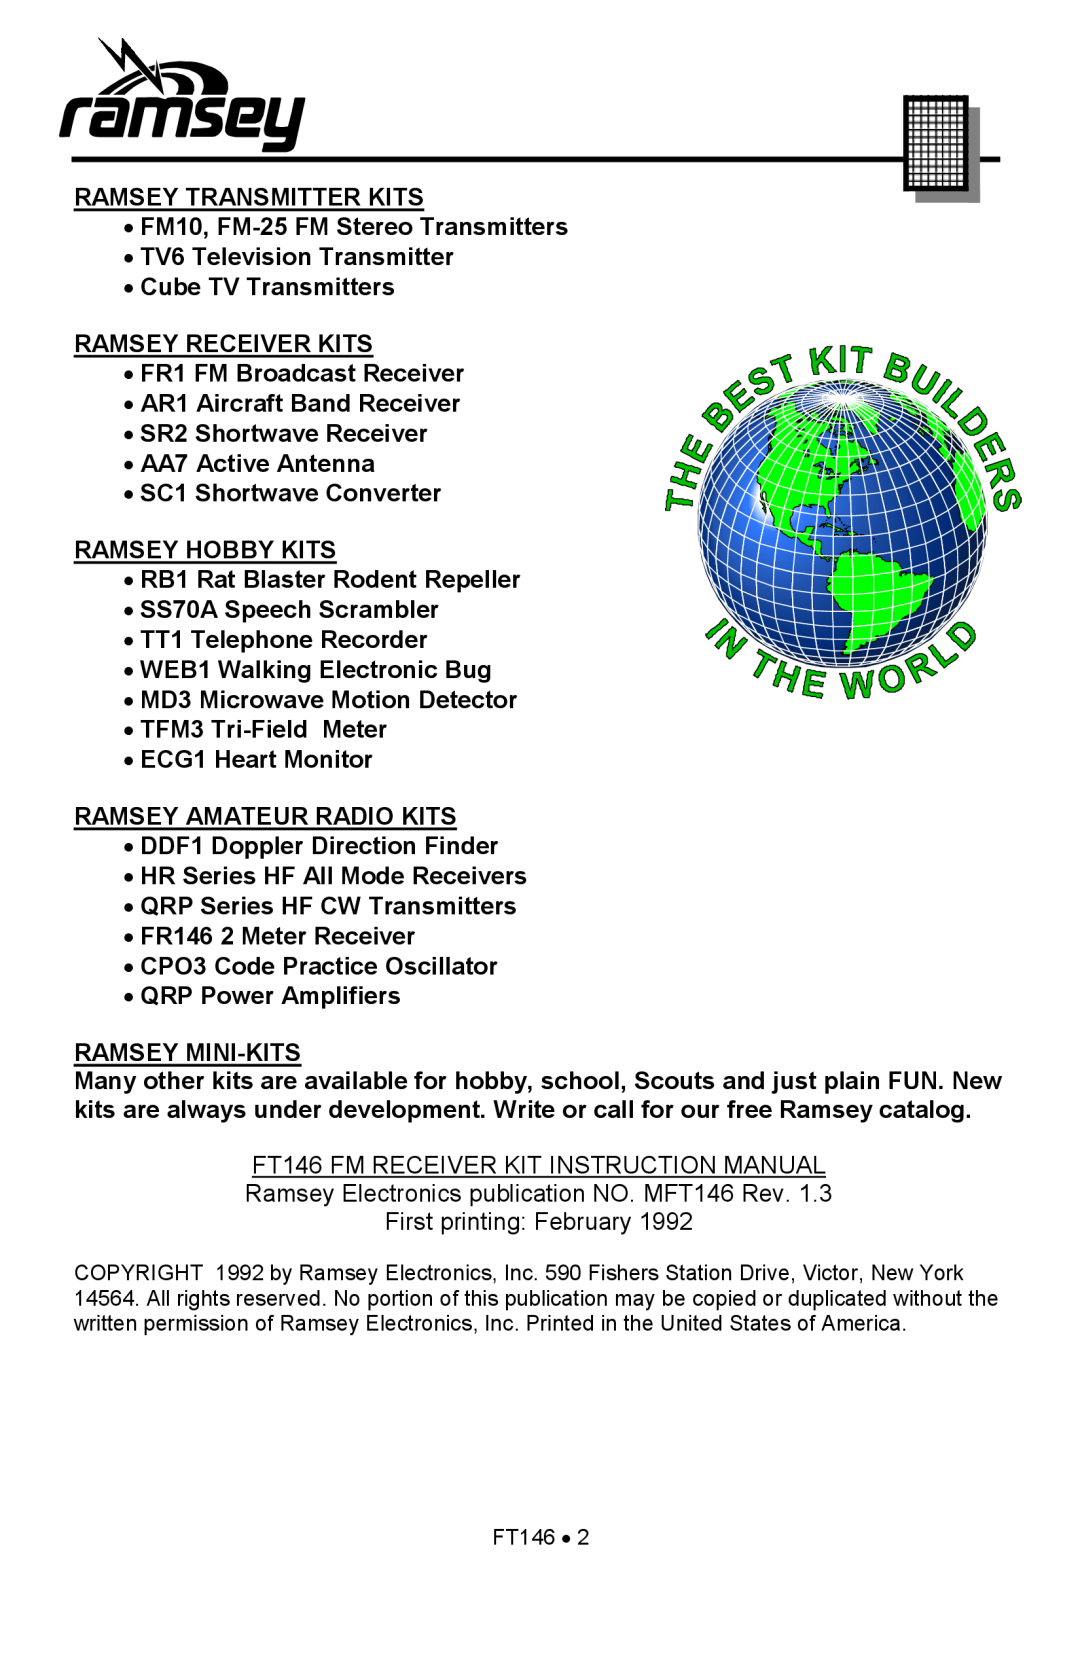 Ramsey Electronics FT146 manual Ramsey Transmitter Kits 